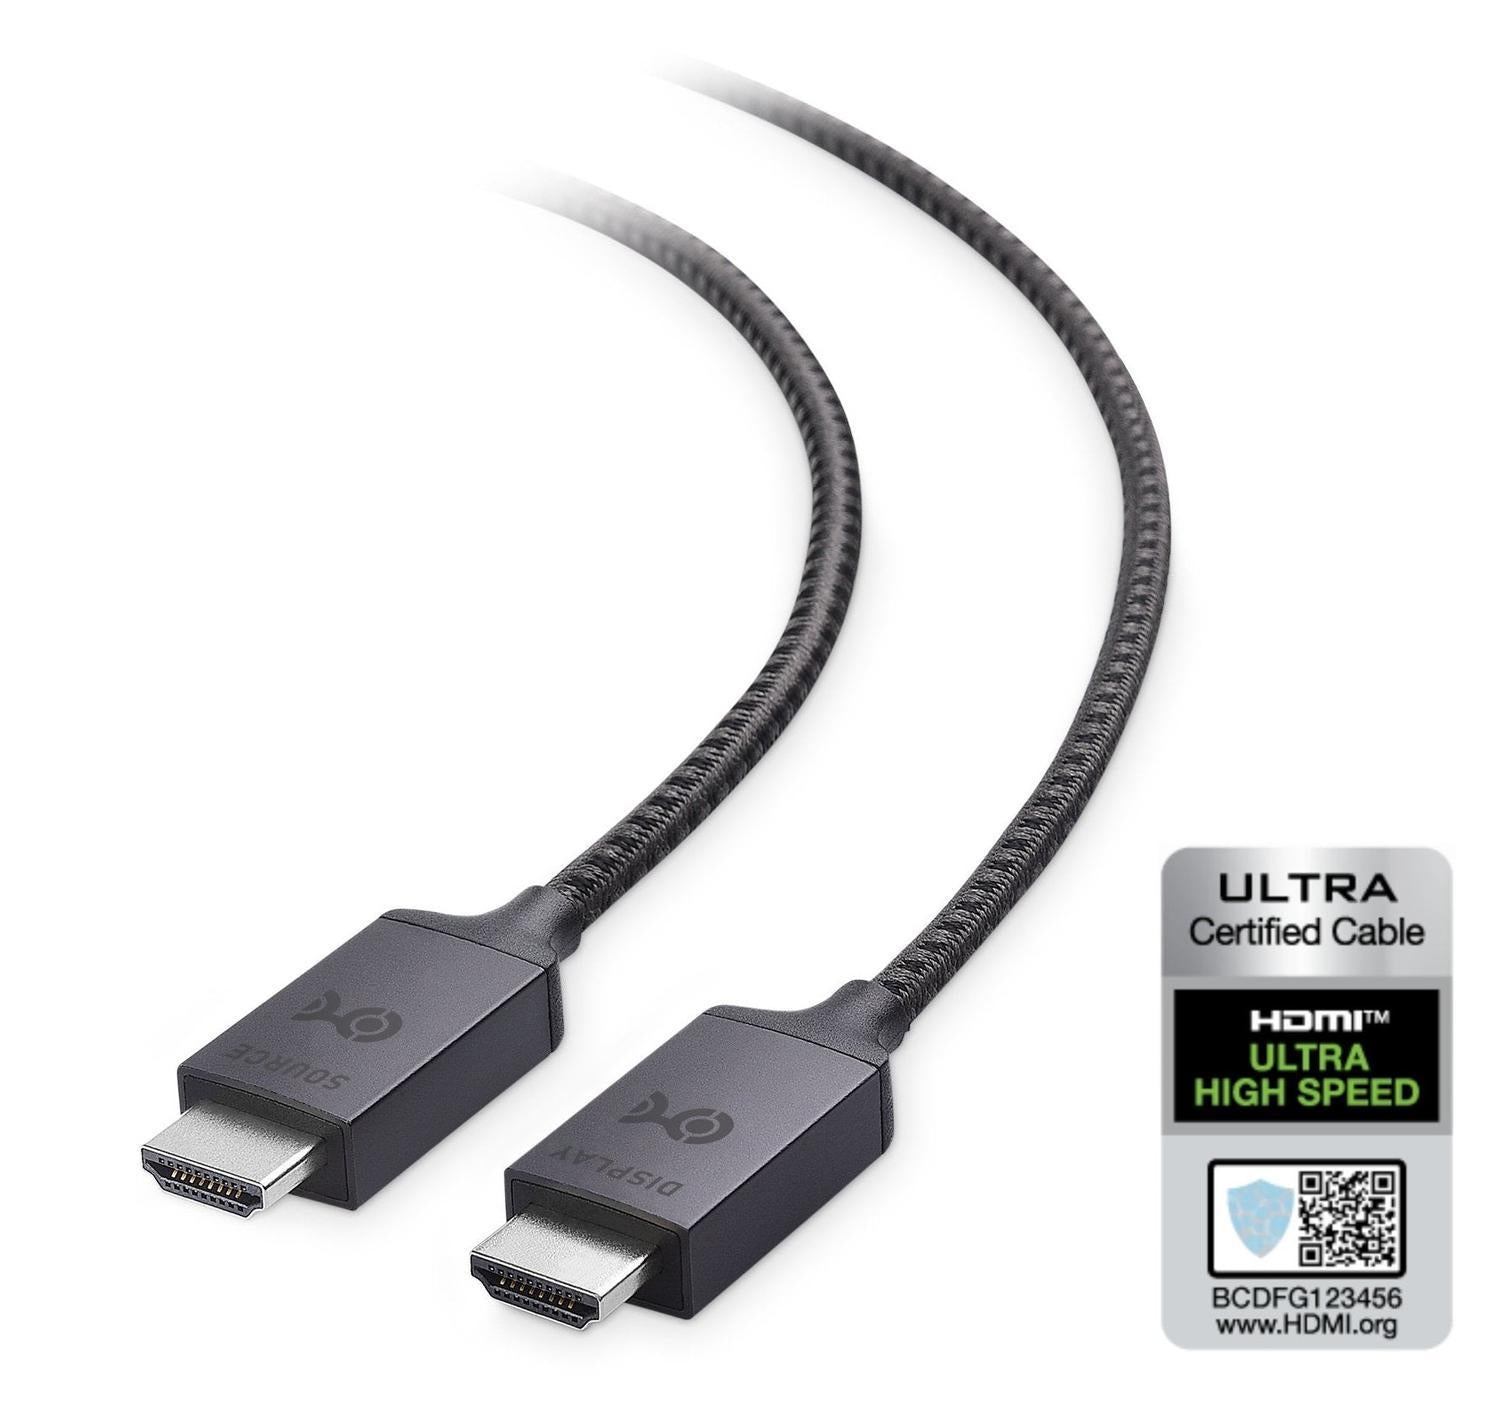 Cable Matters certificeret Ultra High Speed HDMI2.1 aktiv AOC fiberoptisk kabel 15m 8K 4K 60Hz 120Hz 48 Gbps Dynamic HDR eARC VRR